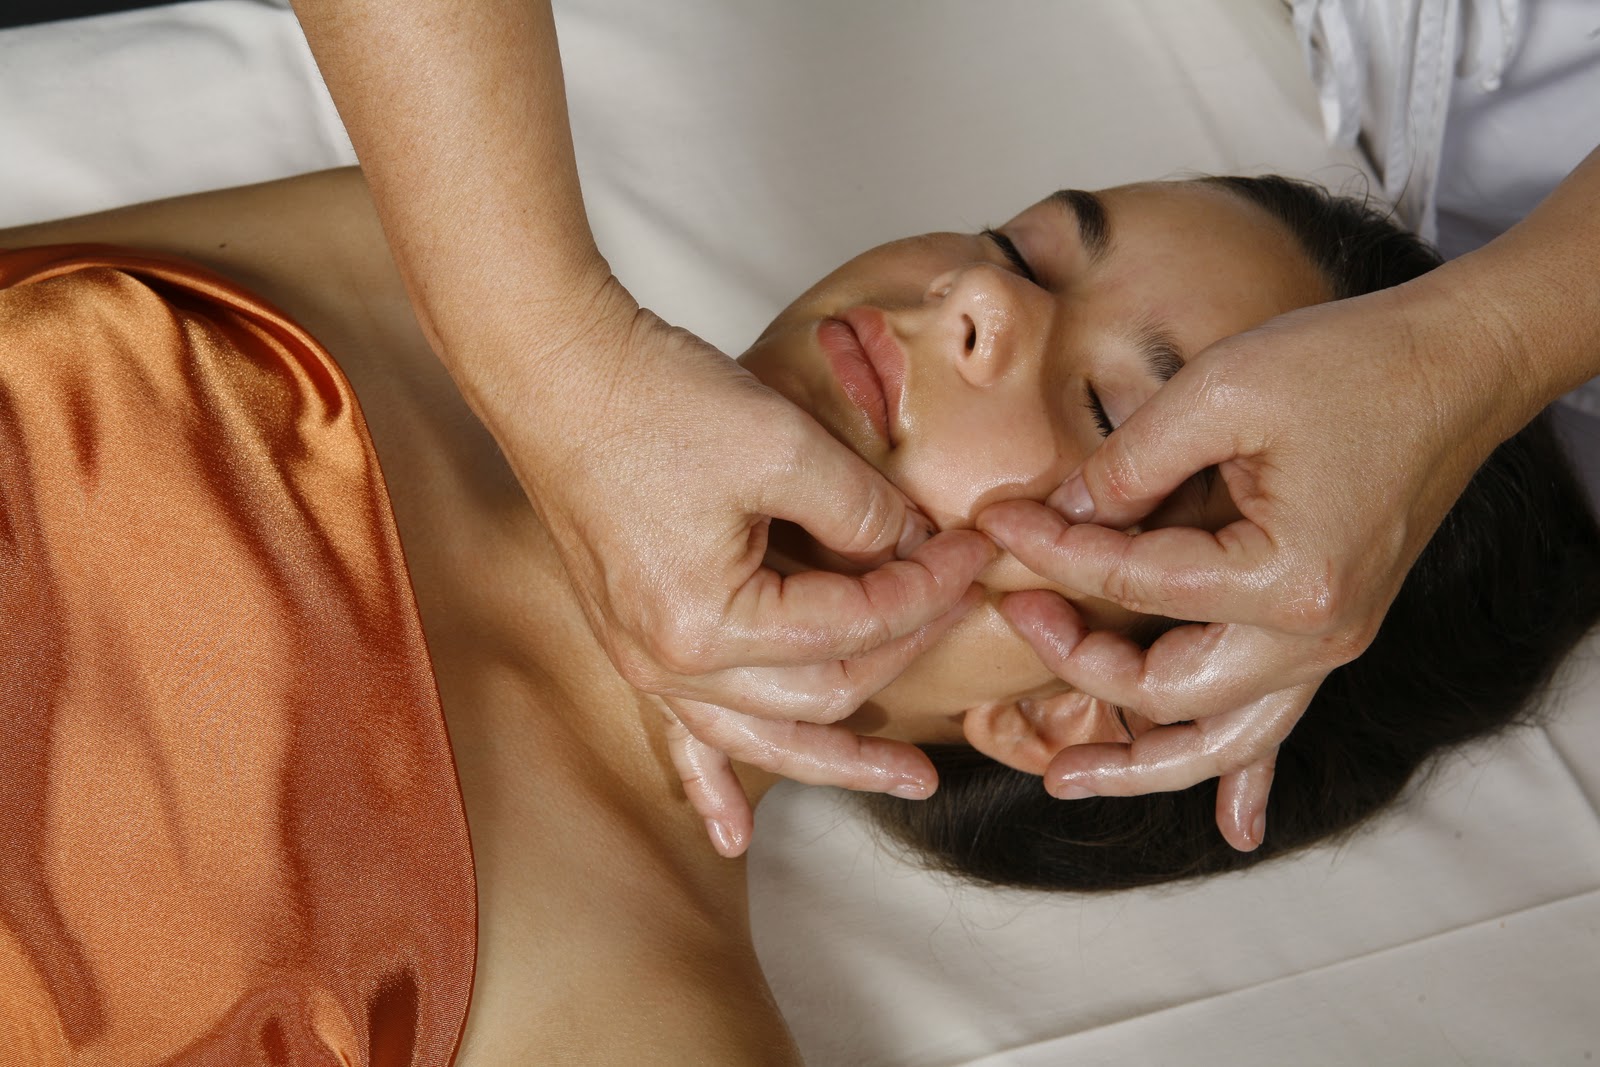 Best Japanese Massage Ideas On Pinterest Japanese Face Massage Facial Massage And Japanese Face